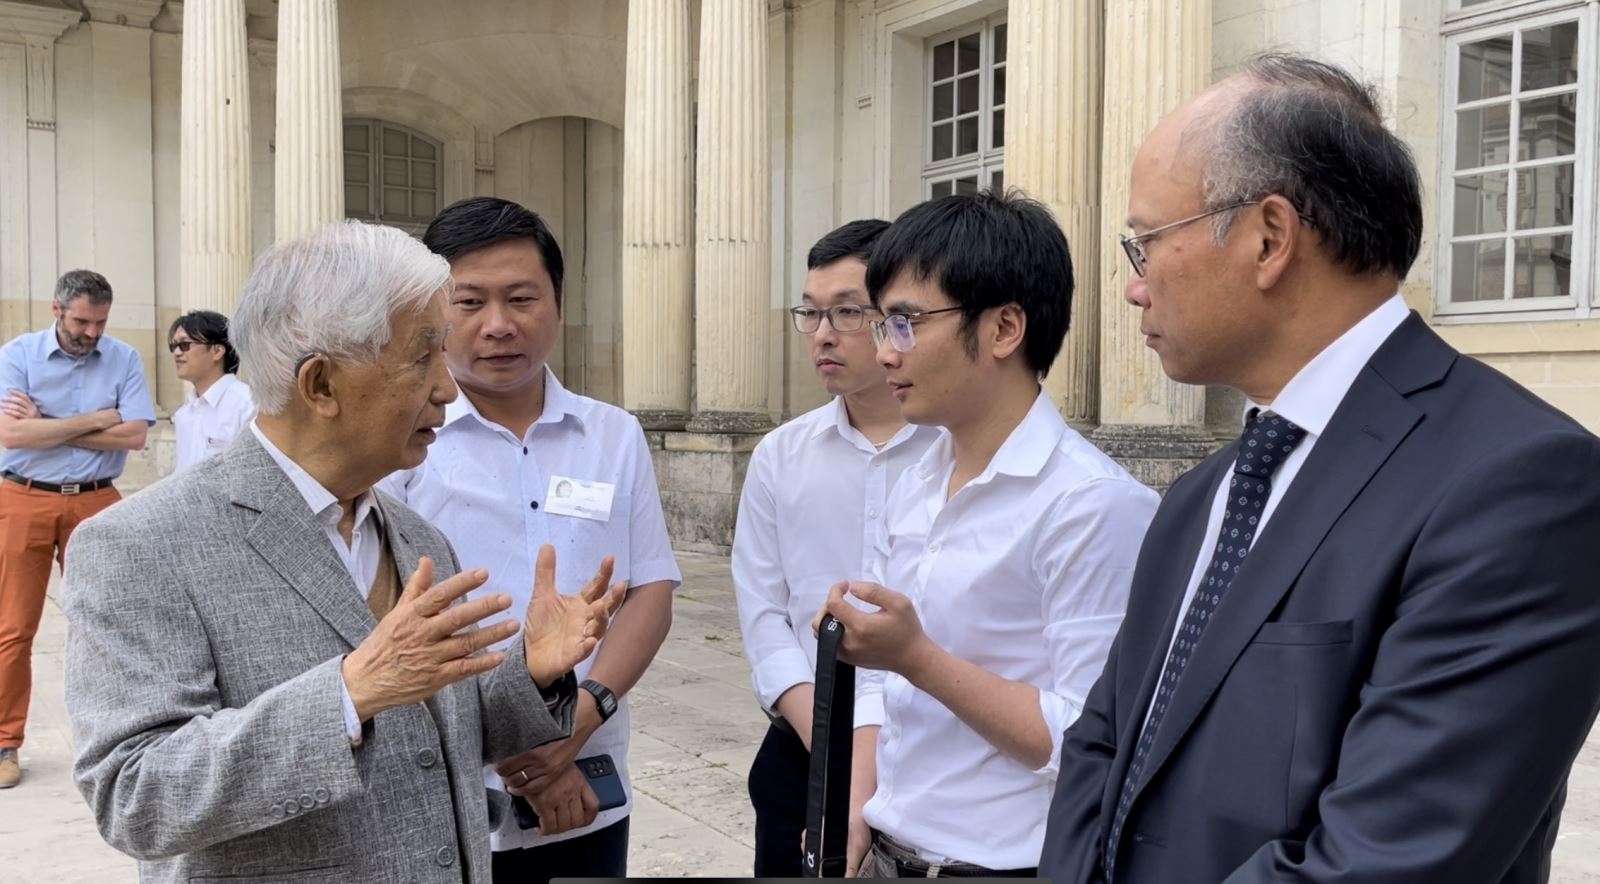 瓦莱奖学金为越南留学生发挥在科学技术领域的才华创造有利条件